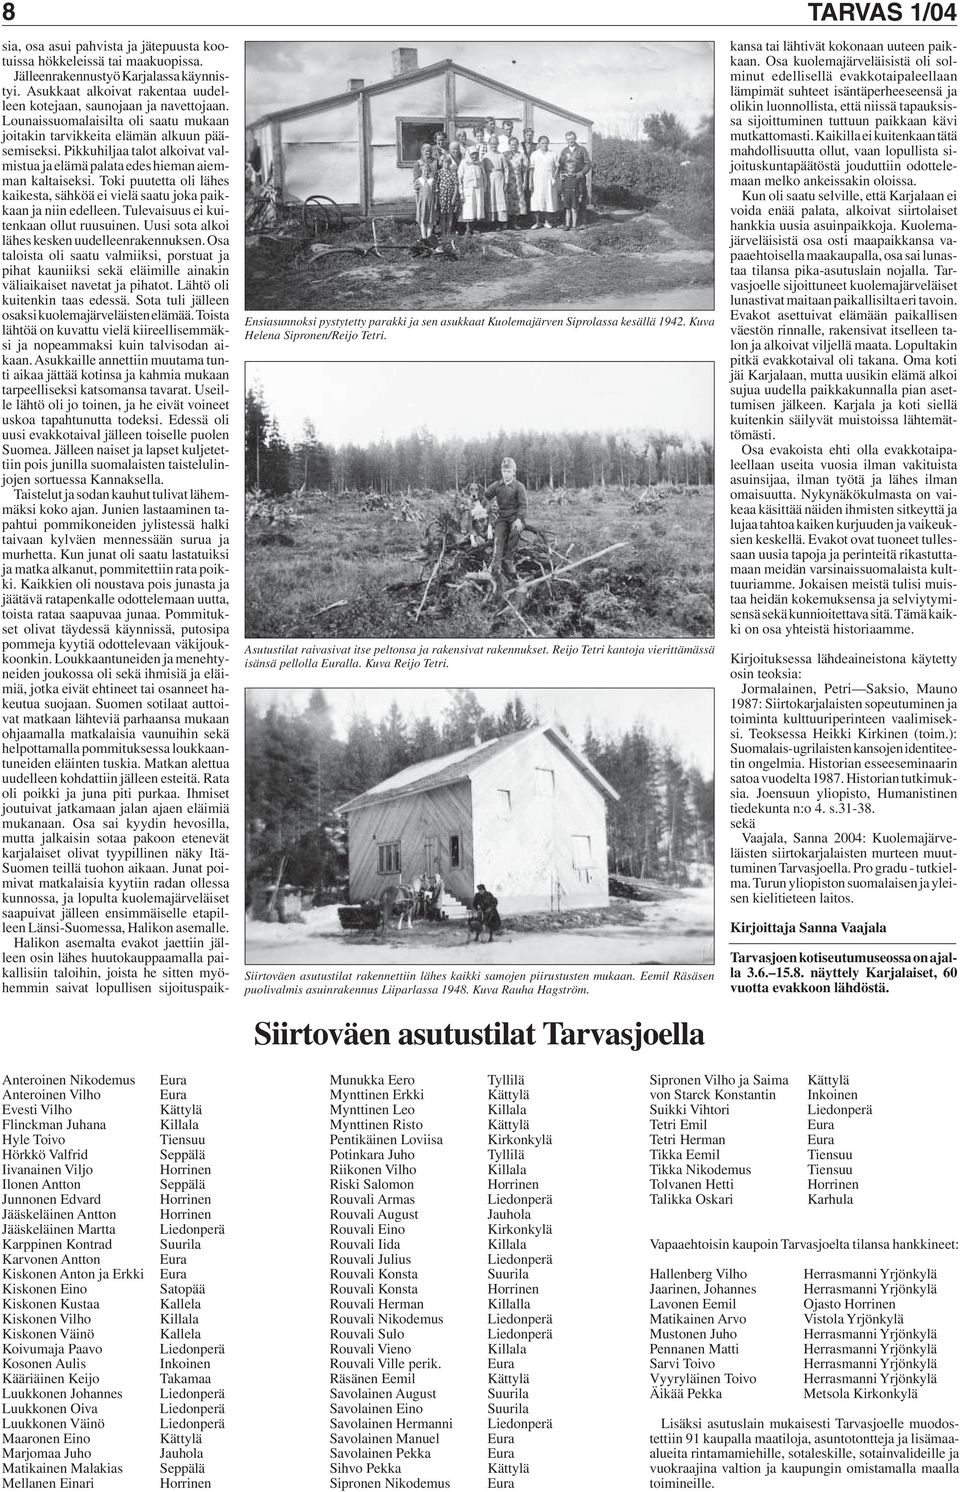 Eemil Räsäsen puolivalmis asuinrakennus Liiparlassa 1948. Kuva Rauha Hagström. Siirtoväen asutustilat Tarvasjoella sia, osa asui pahvista ja jätepuusta kootuissa hökkeleissä tai maakuopissa.